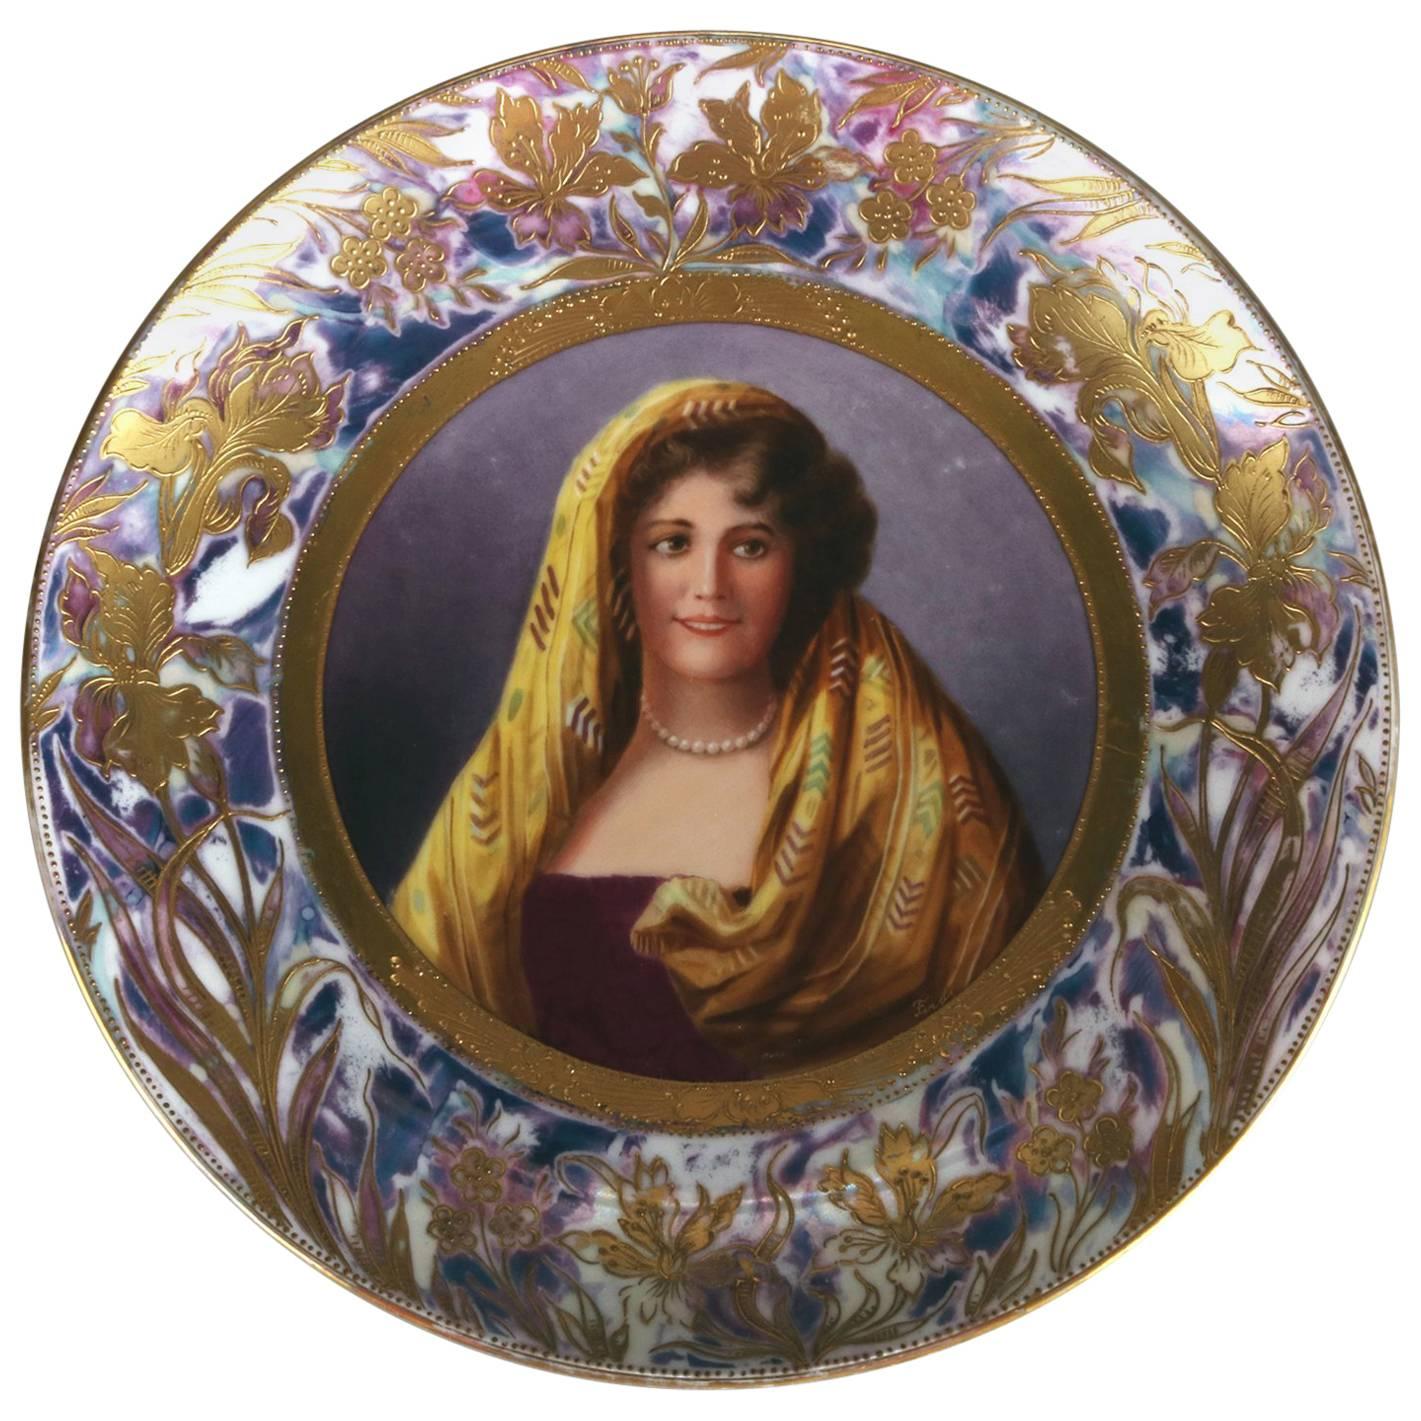 Antique Royal Vienna Austria Porcelain Portrait Plate Signed Ferdi, 19th Century